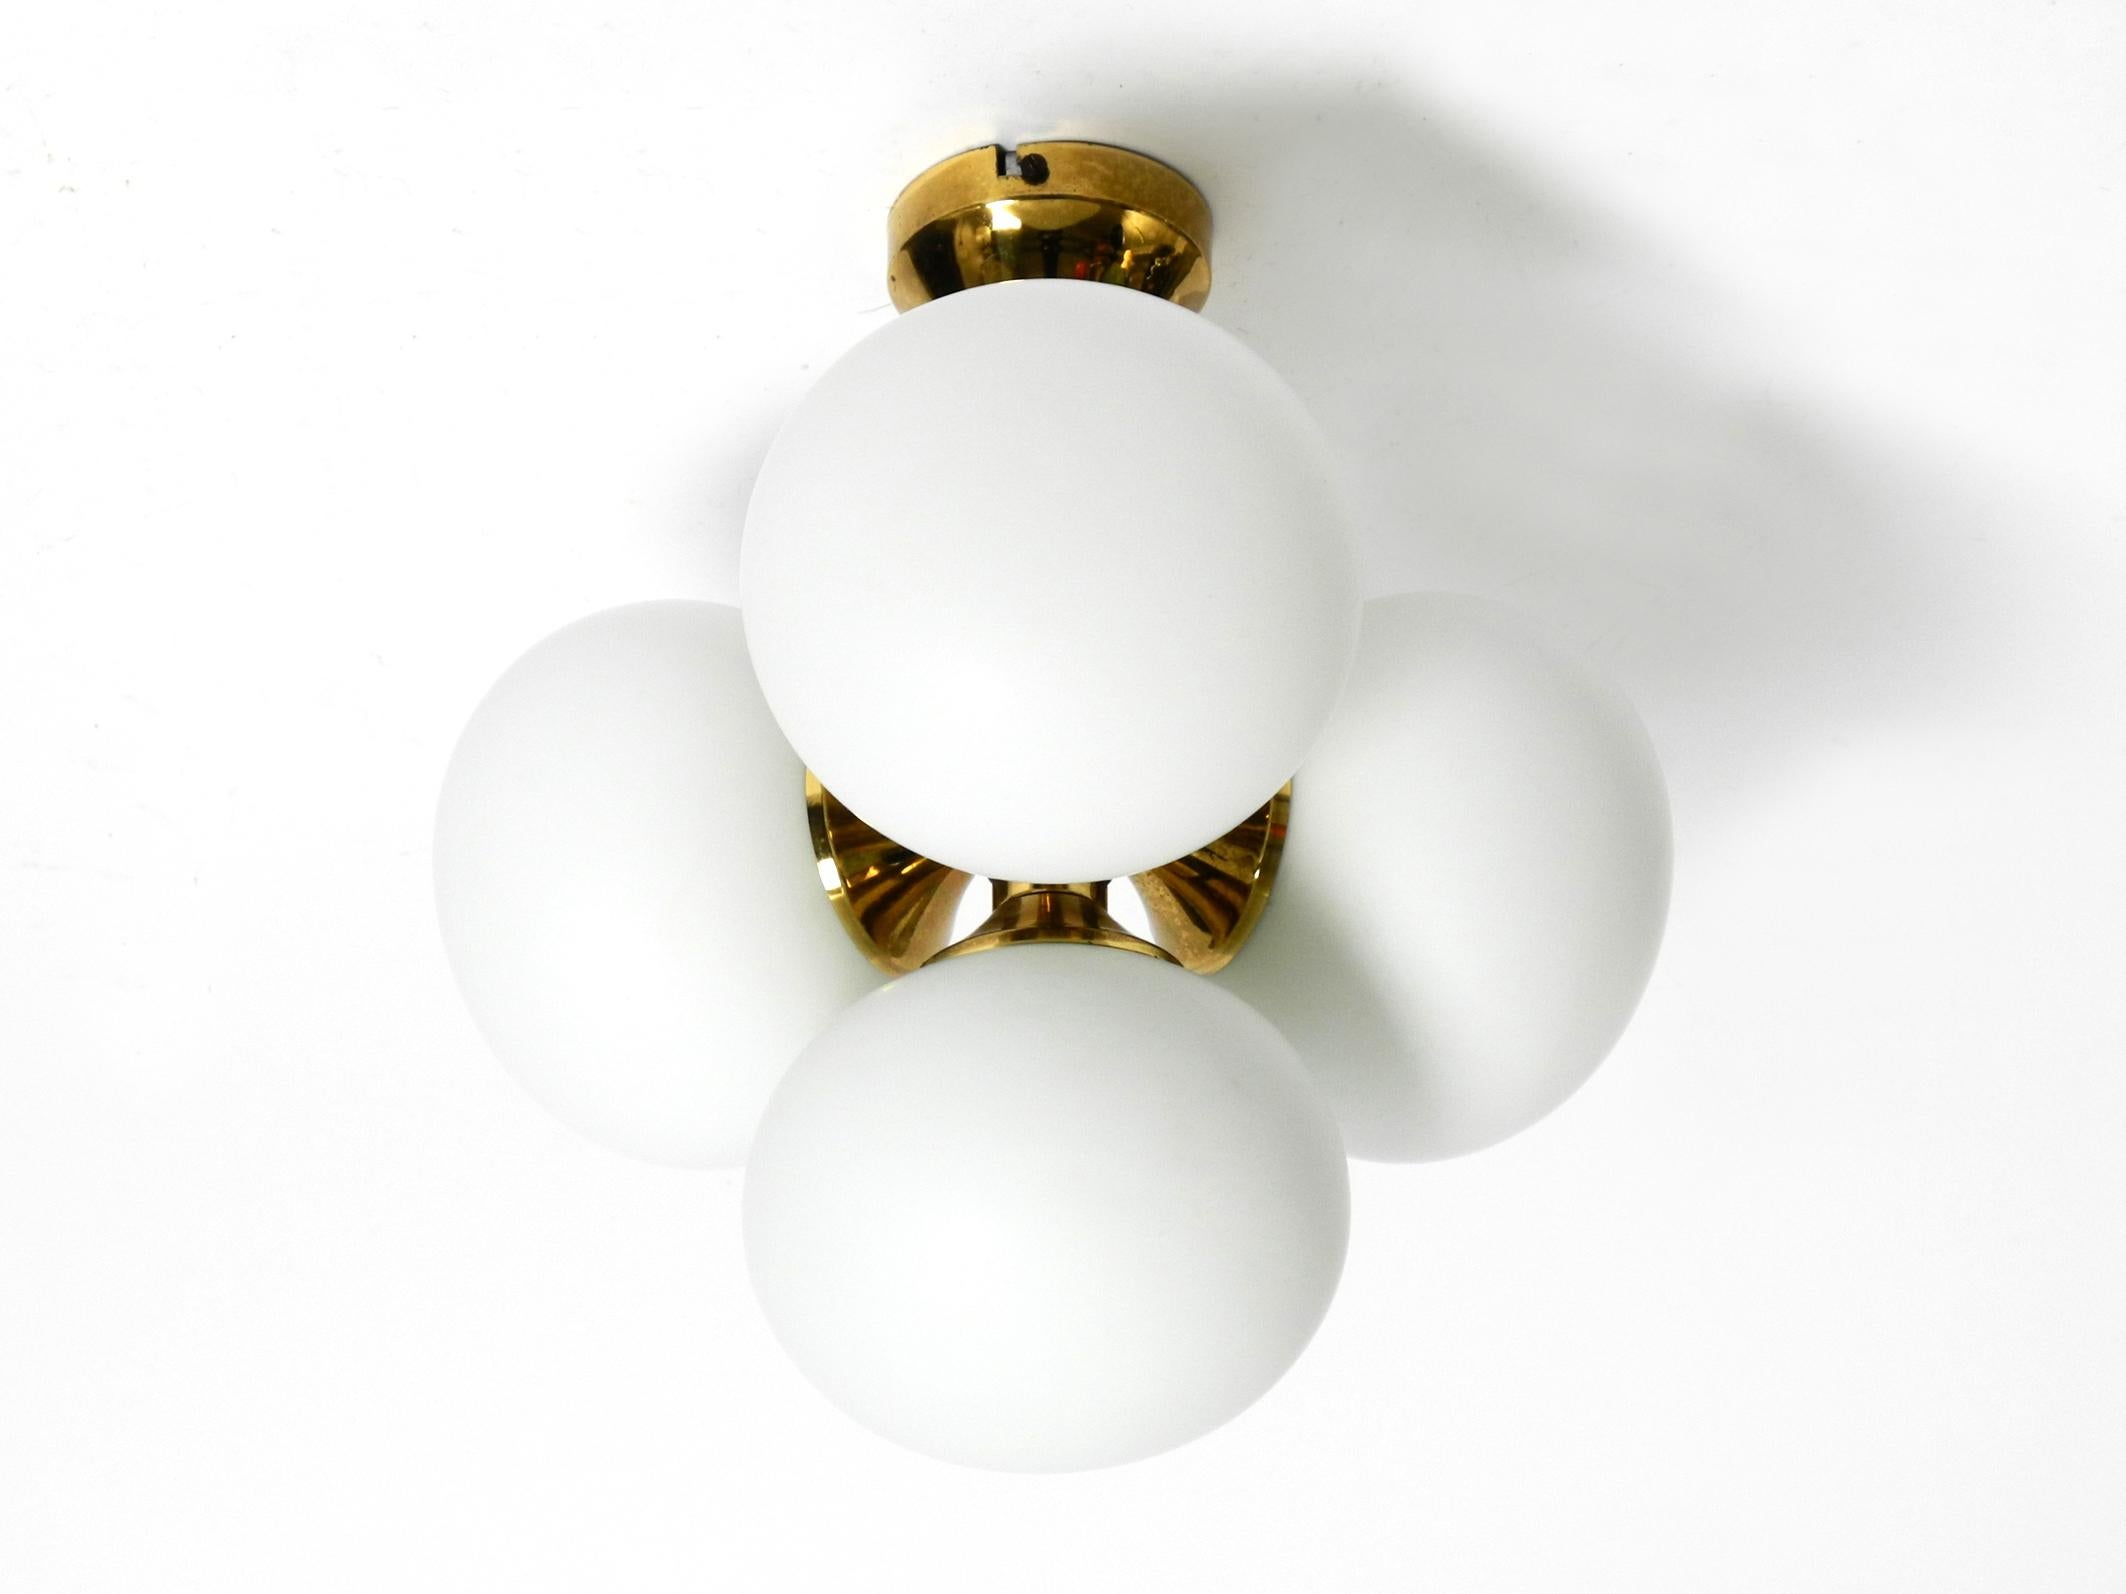 Magnifique plafonnier en laiton des années 1960 avec 4 sphères en verre blanc. Le cadre est entièrement en laiton. Fabriqué par 